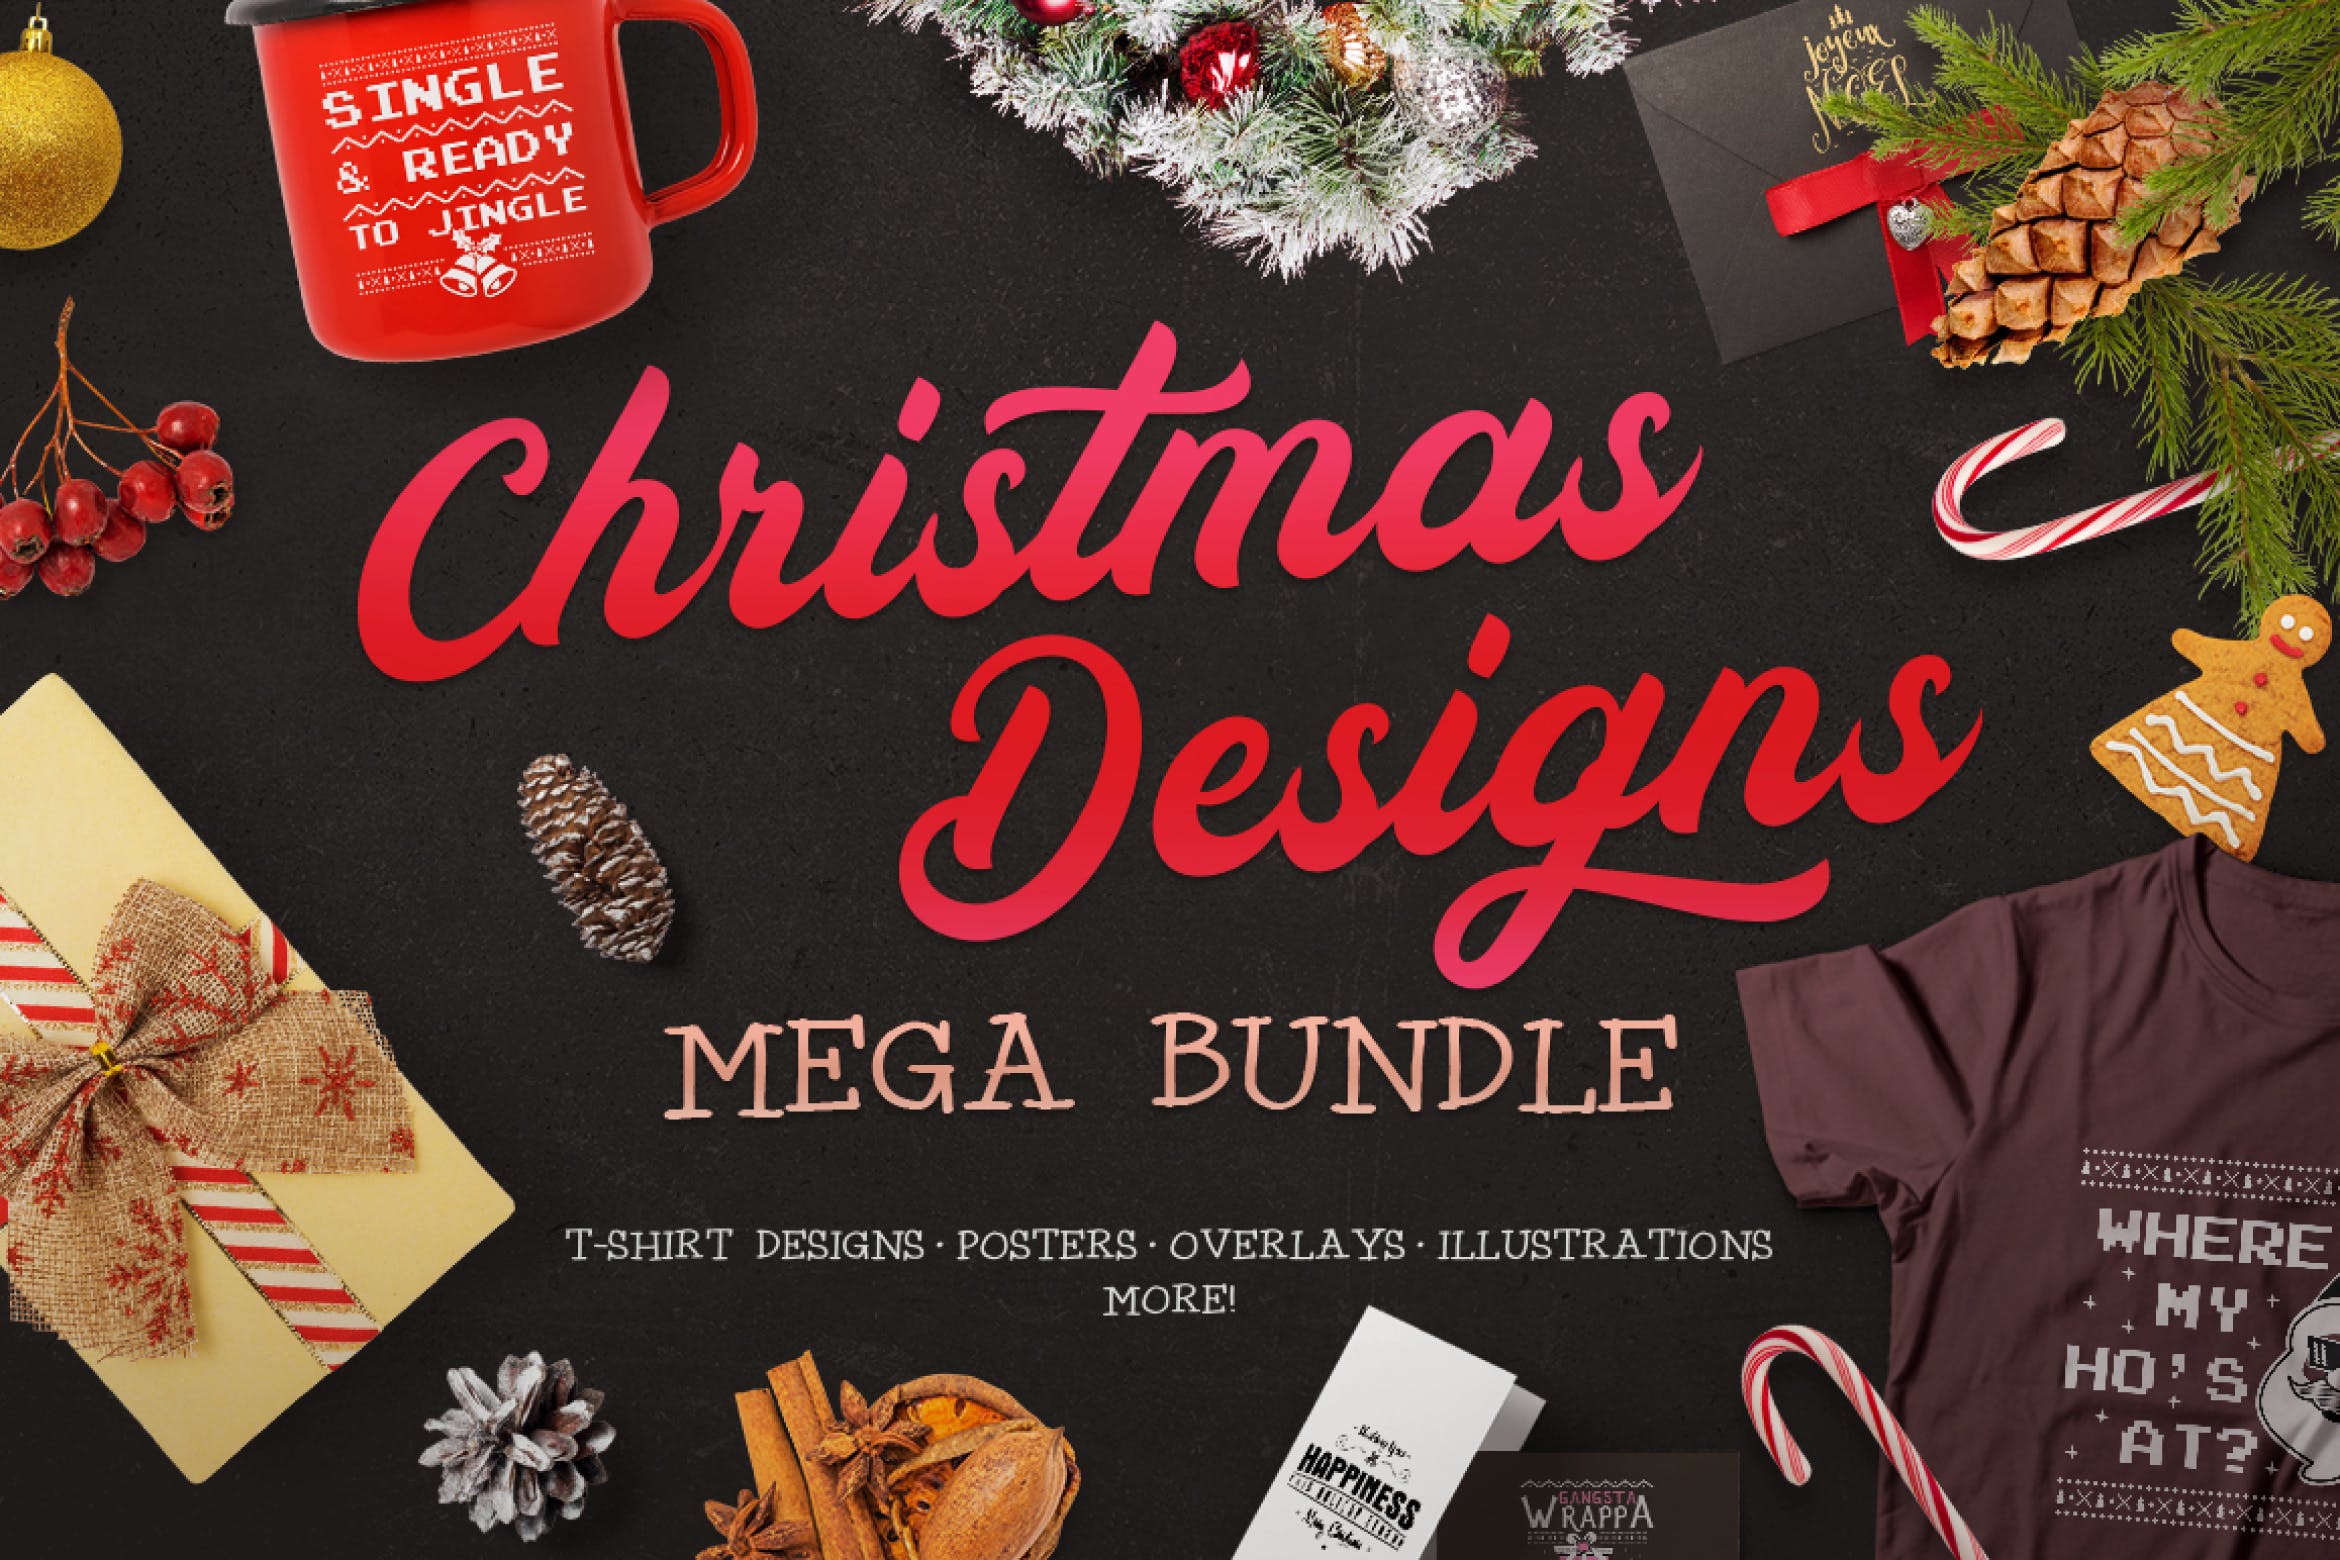 圣诞节主题设计素材包[1.07GB] Christmas Designs Mega Bundle, Retro Xmas Designs插图